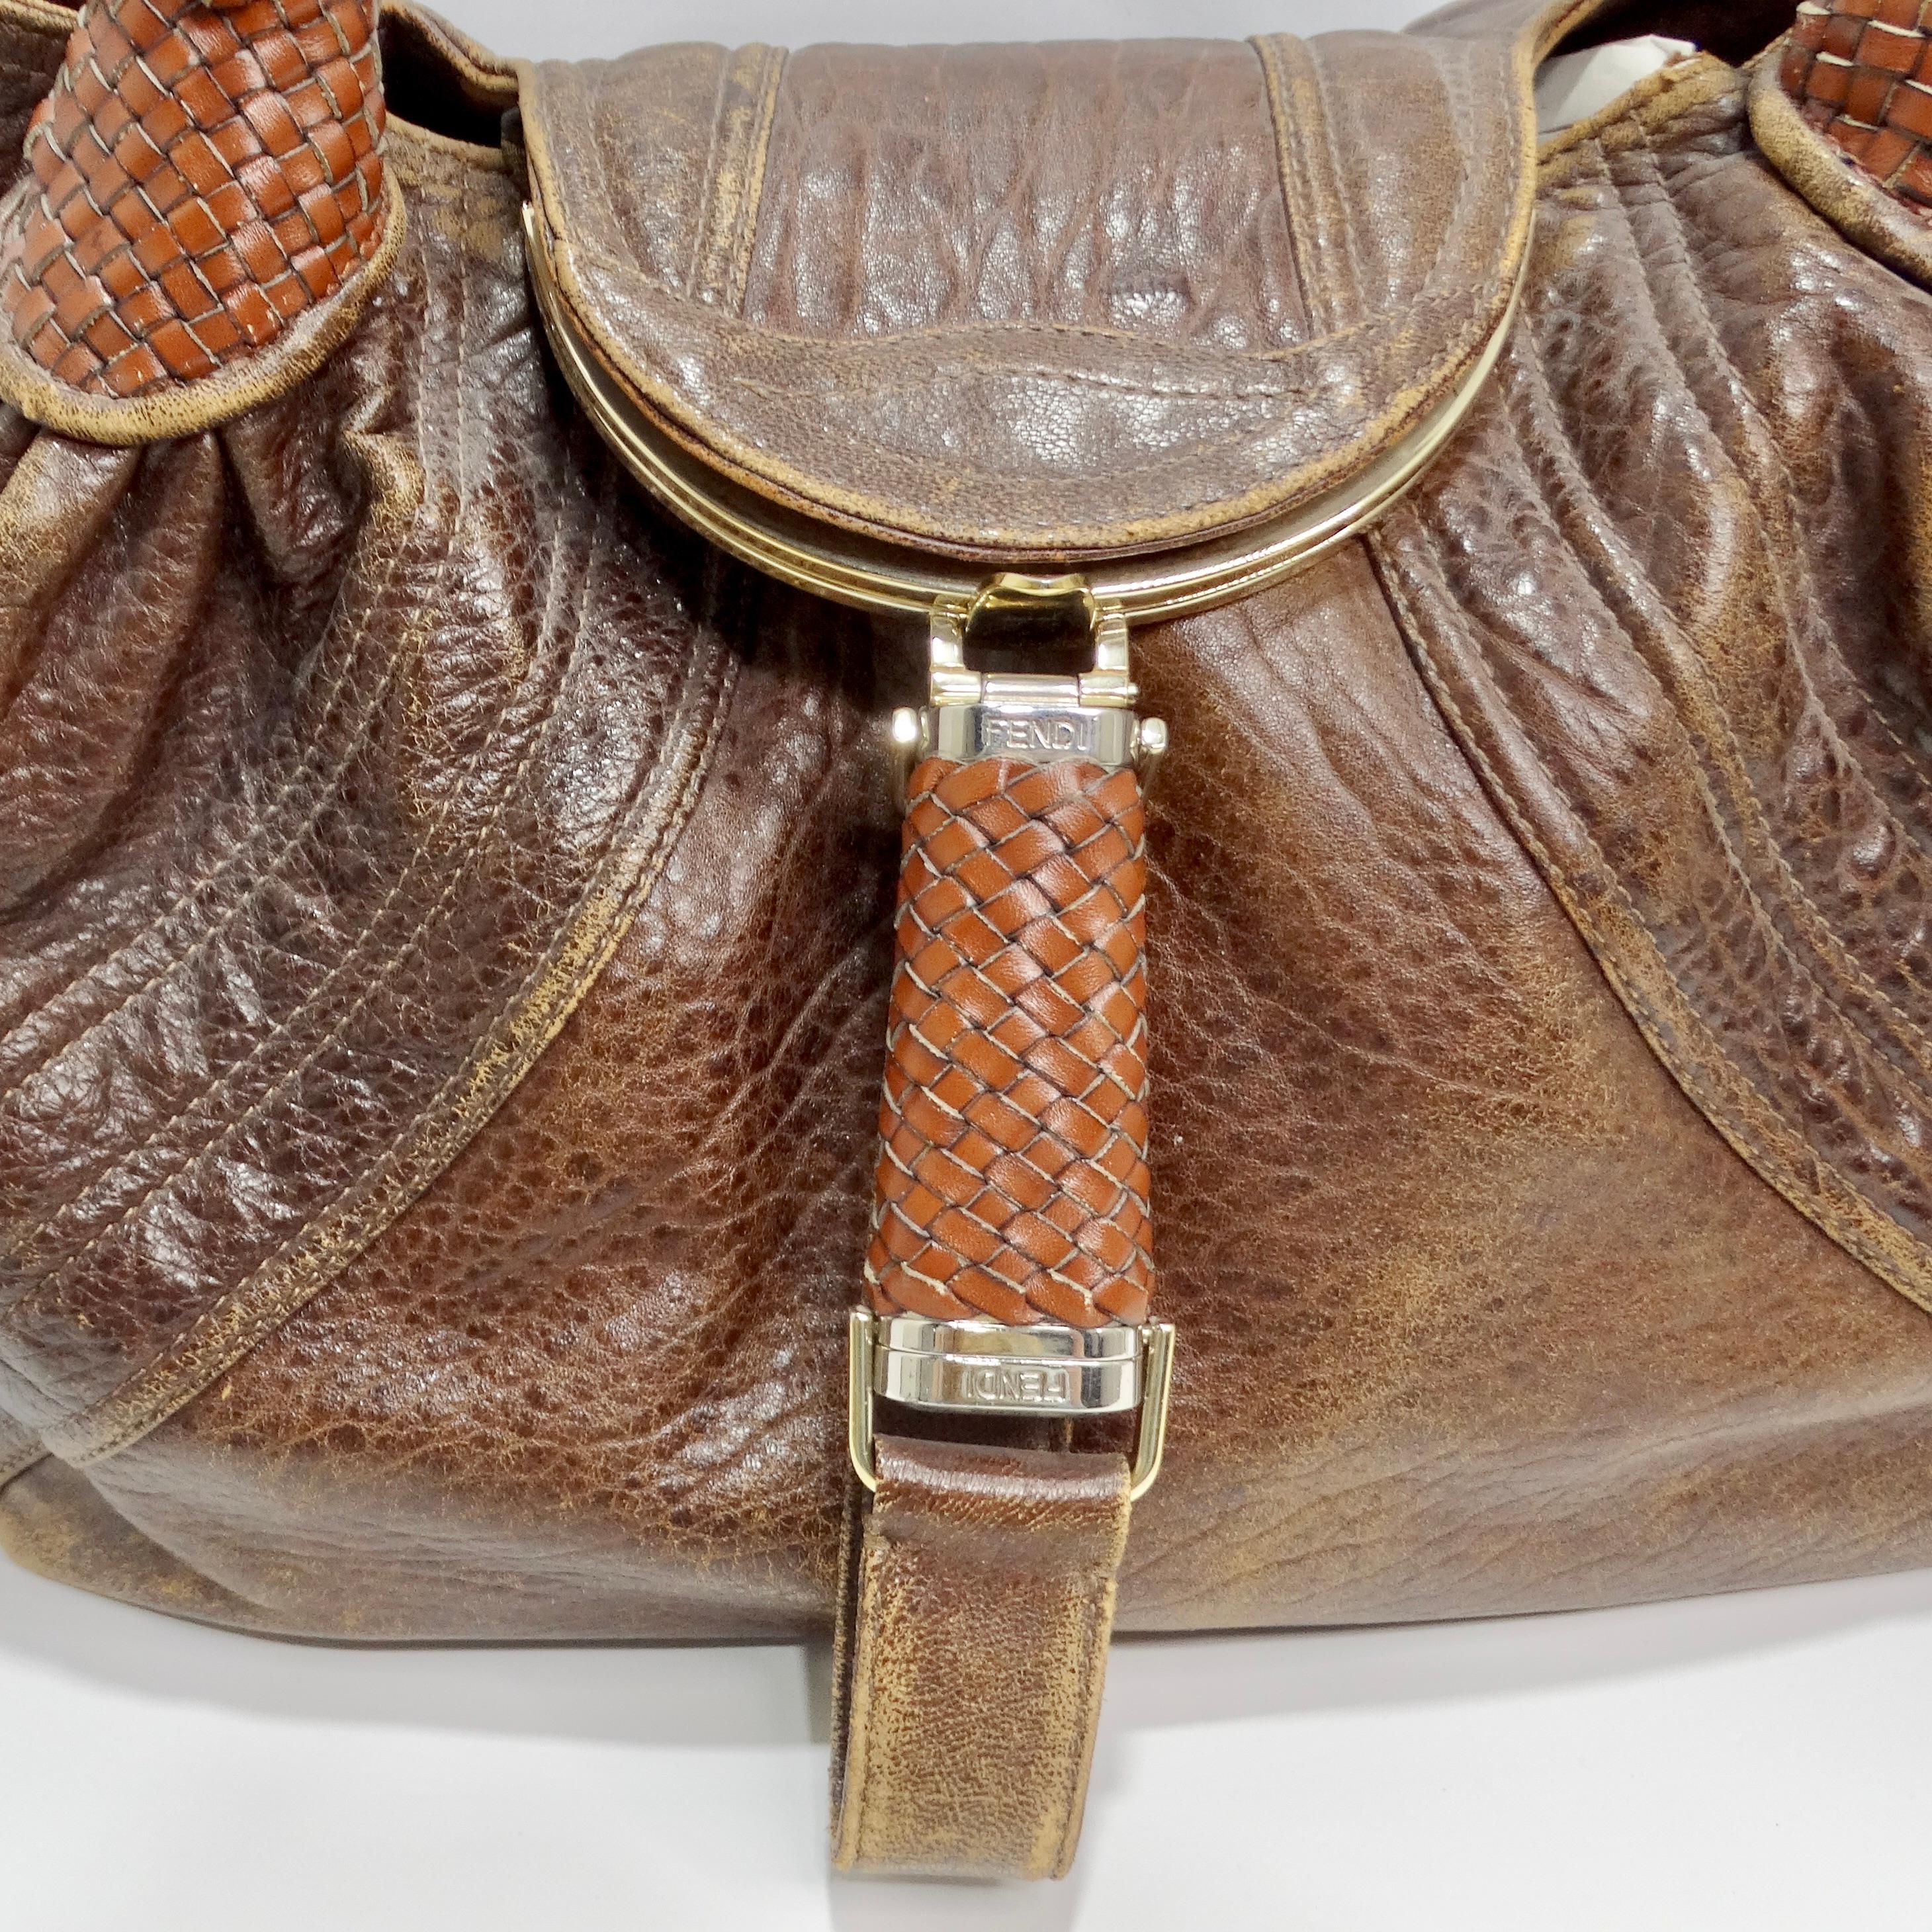 Voici le sac à bandoulière Spy en cuir marron de Fendi, un accessoire luxueux et pratique qui allie élégance intemporelle et design fonctionnel. Confectionné en cuir nappa richement texturé de couleur marron chocolat, ce sac est d'une grande